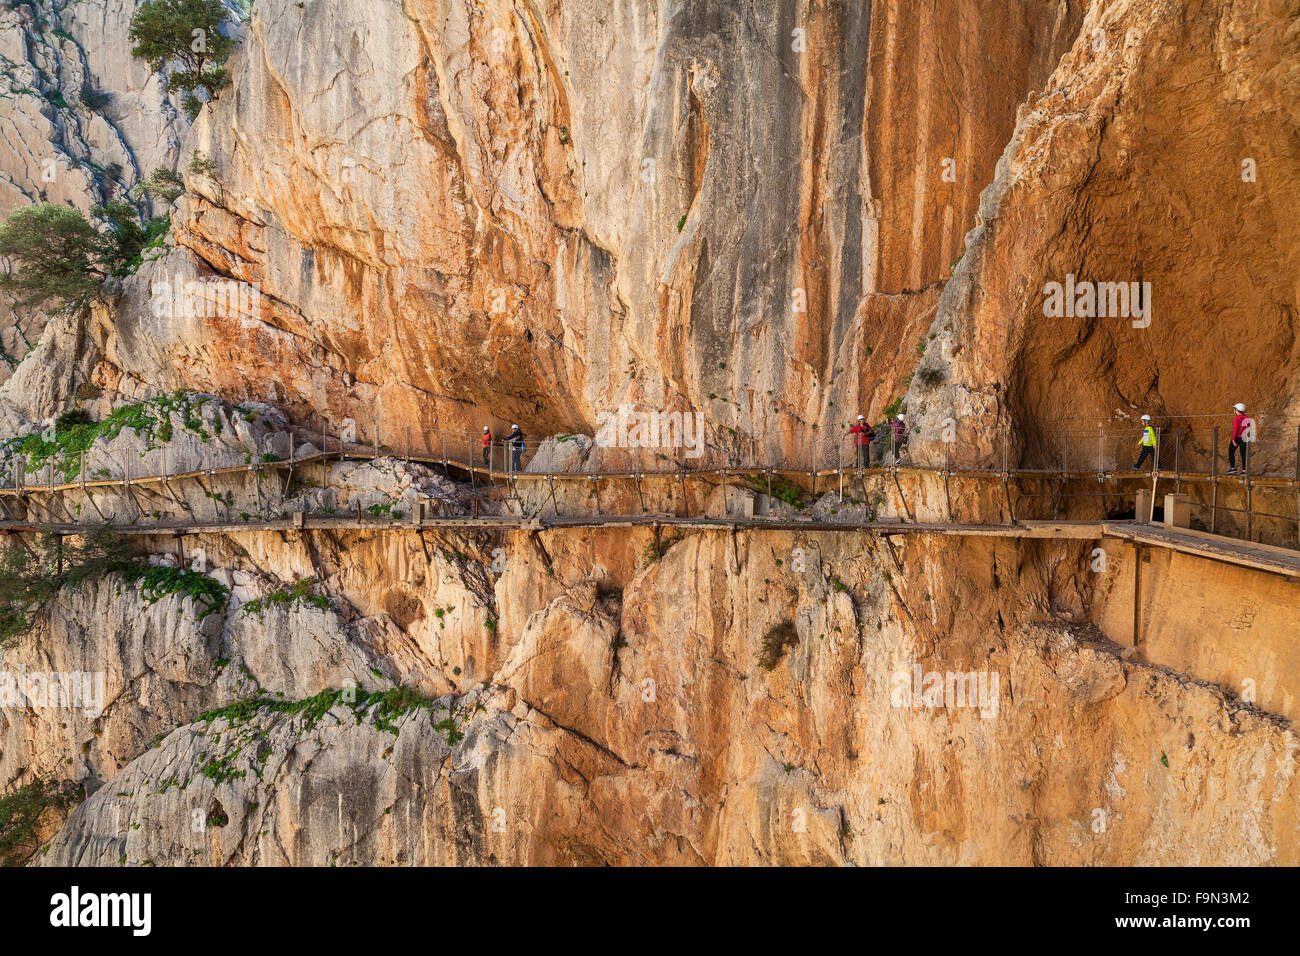 El Caminito del Rey es una pasarela, clavado a lo largo de las escarpadas paredes de un angosto desfiladero de El Chorro, provincia de Málaga, Andalucía, España. Foto de stock